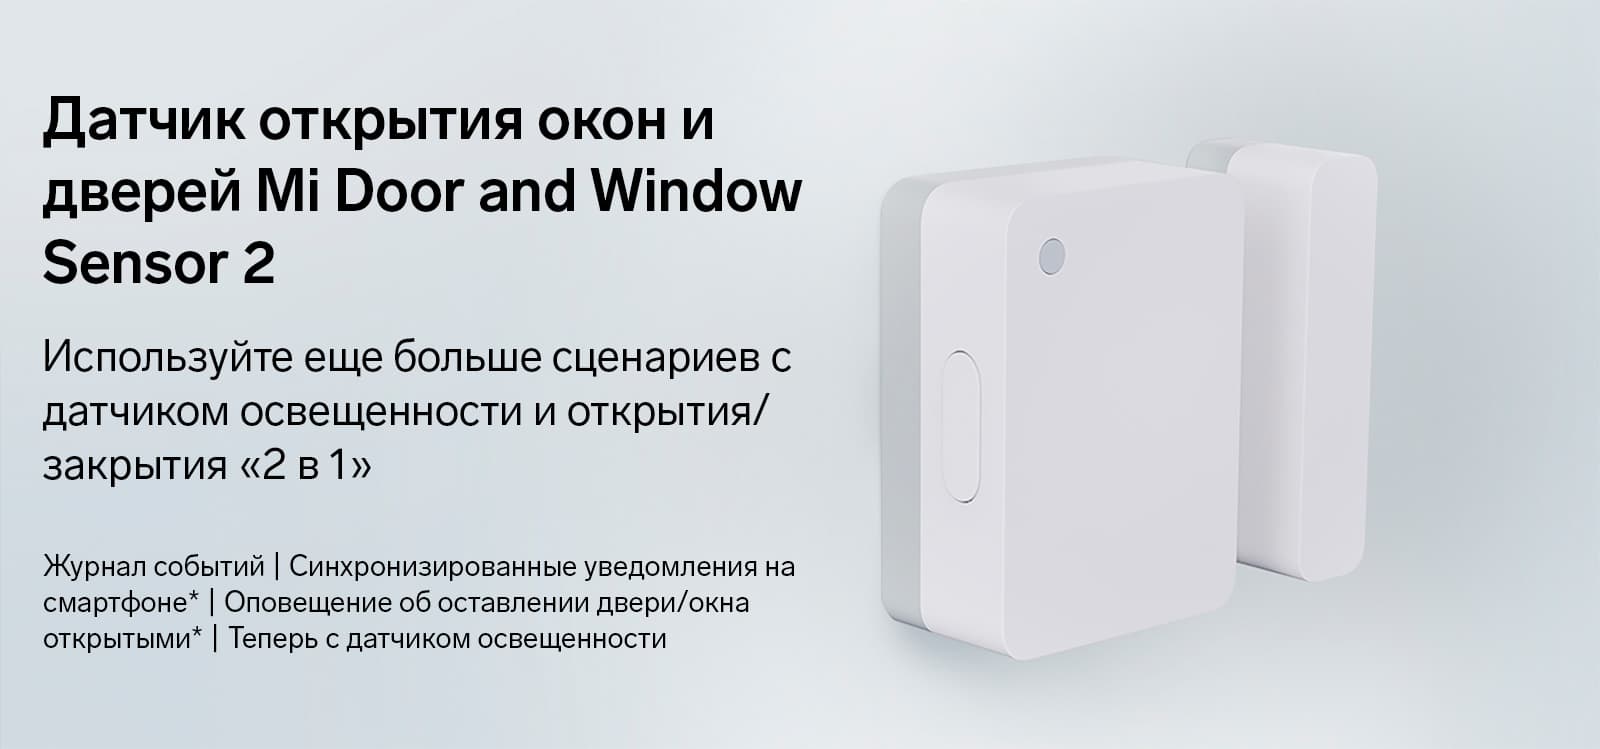 Датчик открытия окон и дверей Mi Door and Window Sensor 2